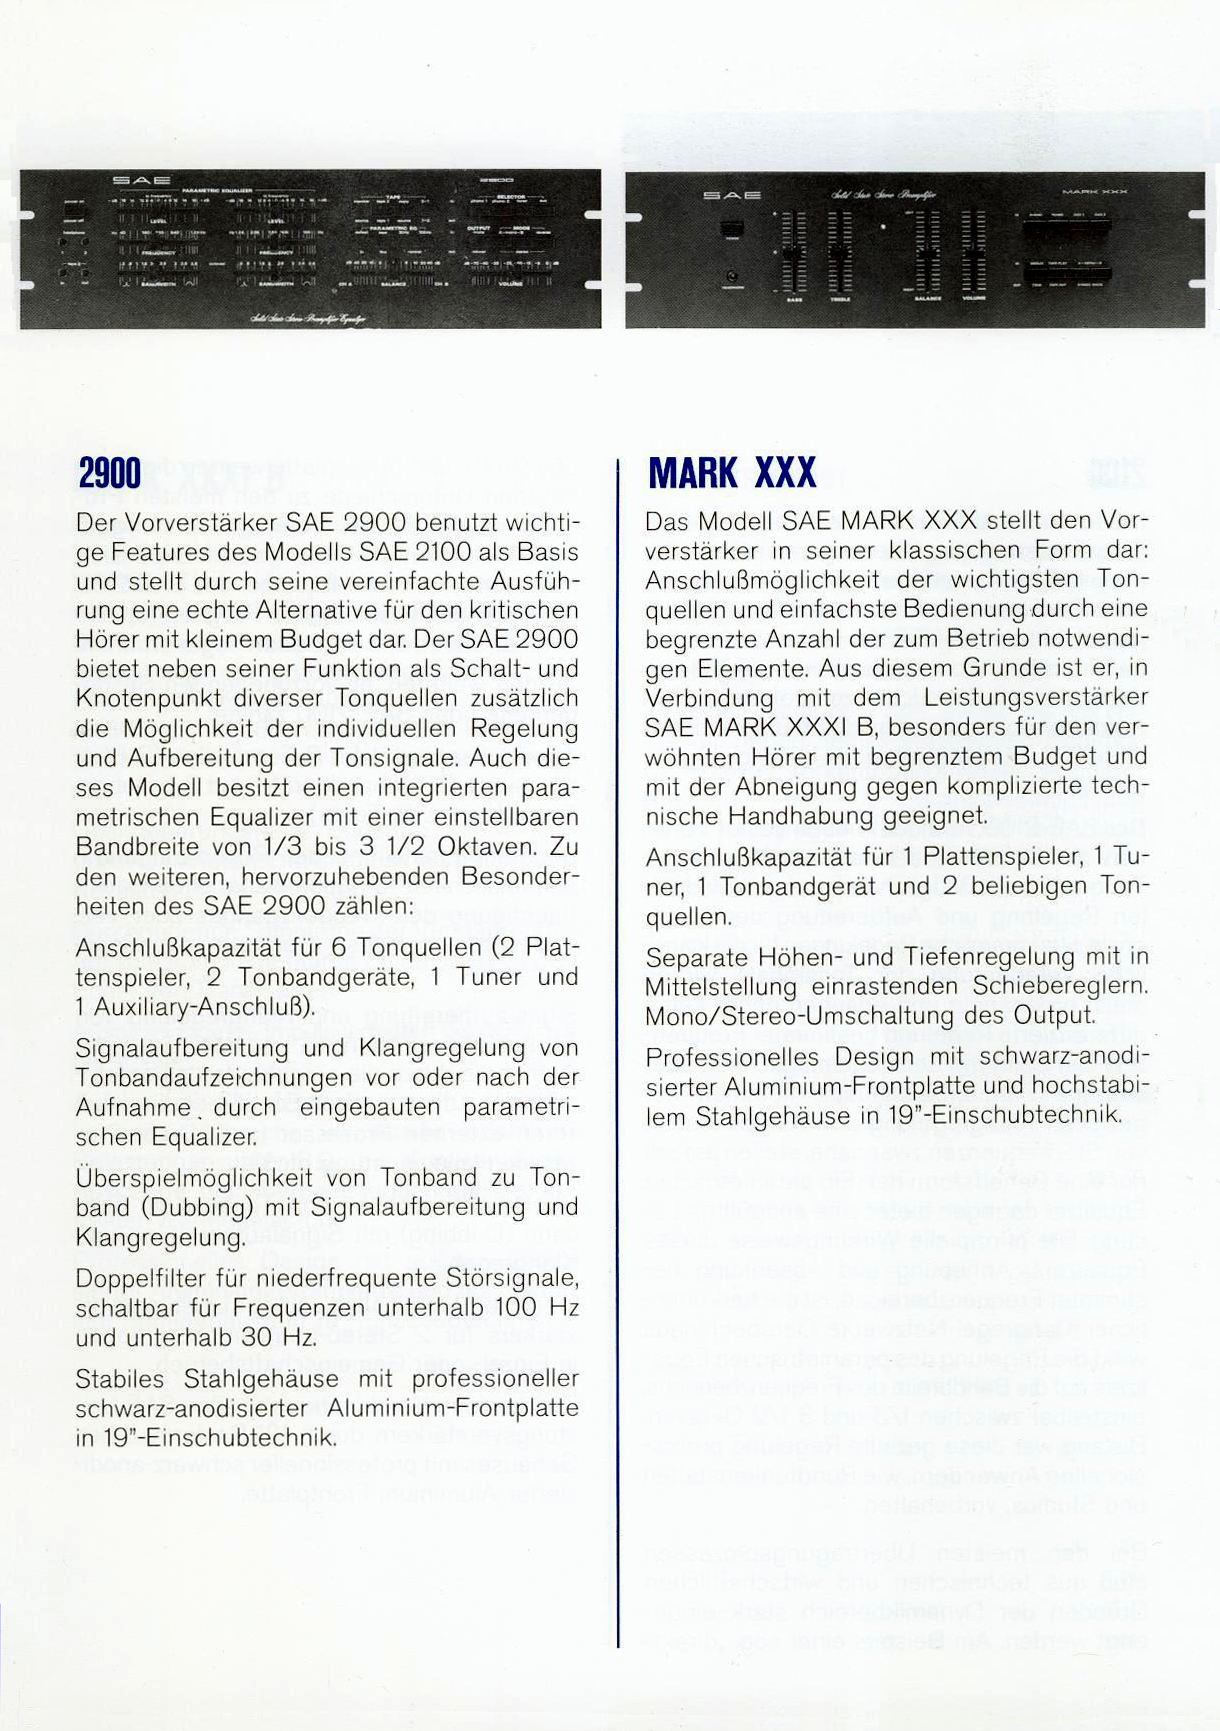 SAE 2900-MARK XXX-Prospekt-1975.jpg